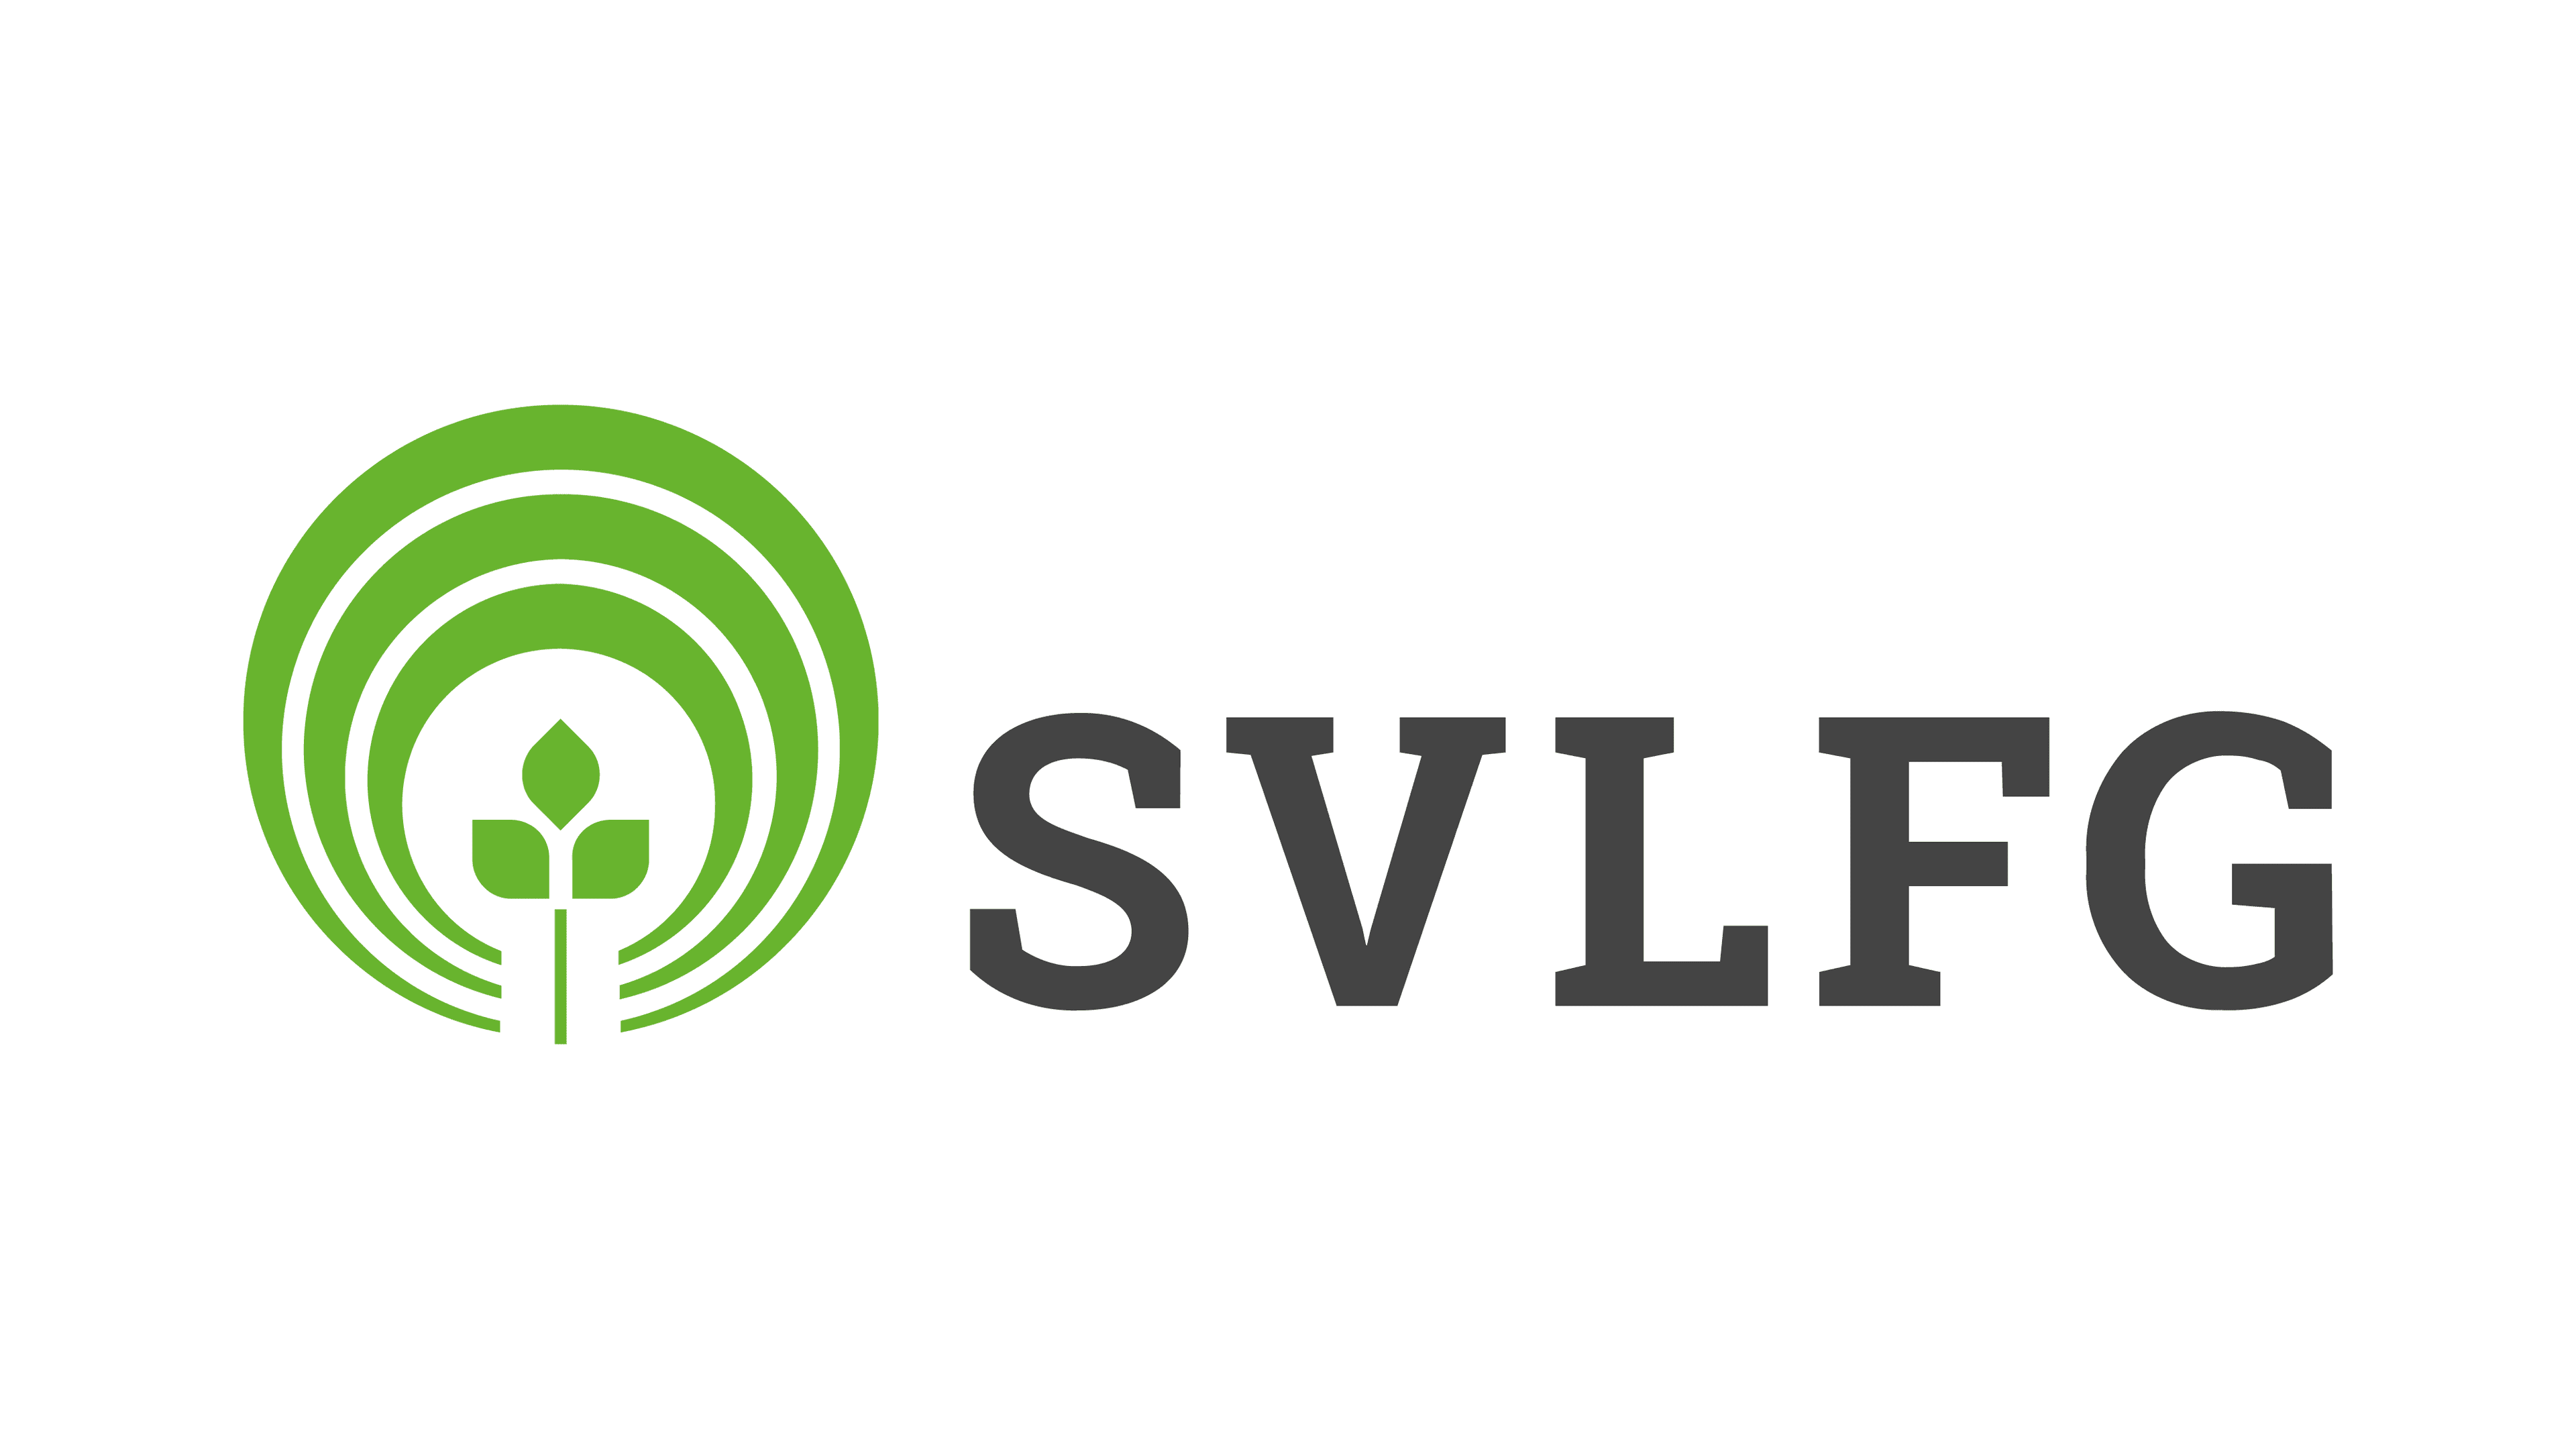 SVLFG logo